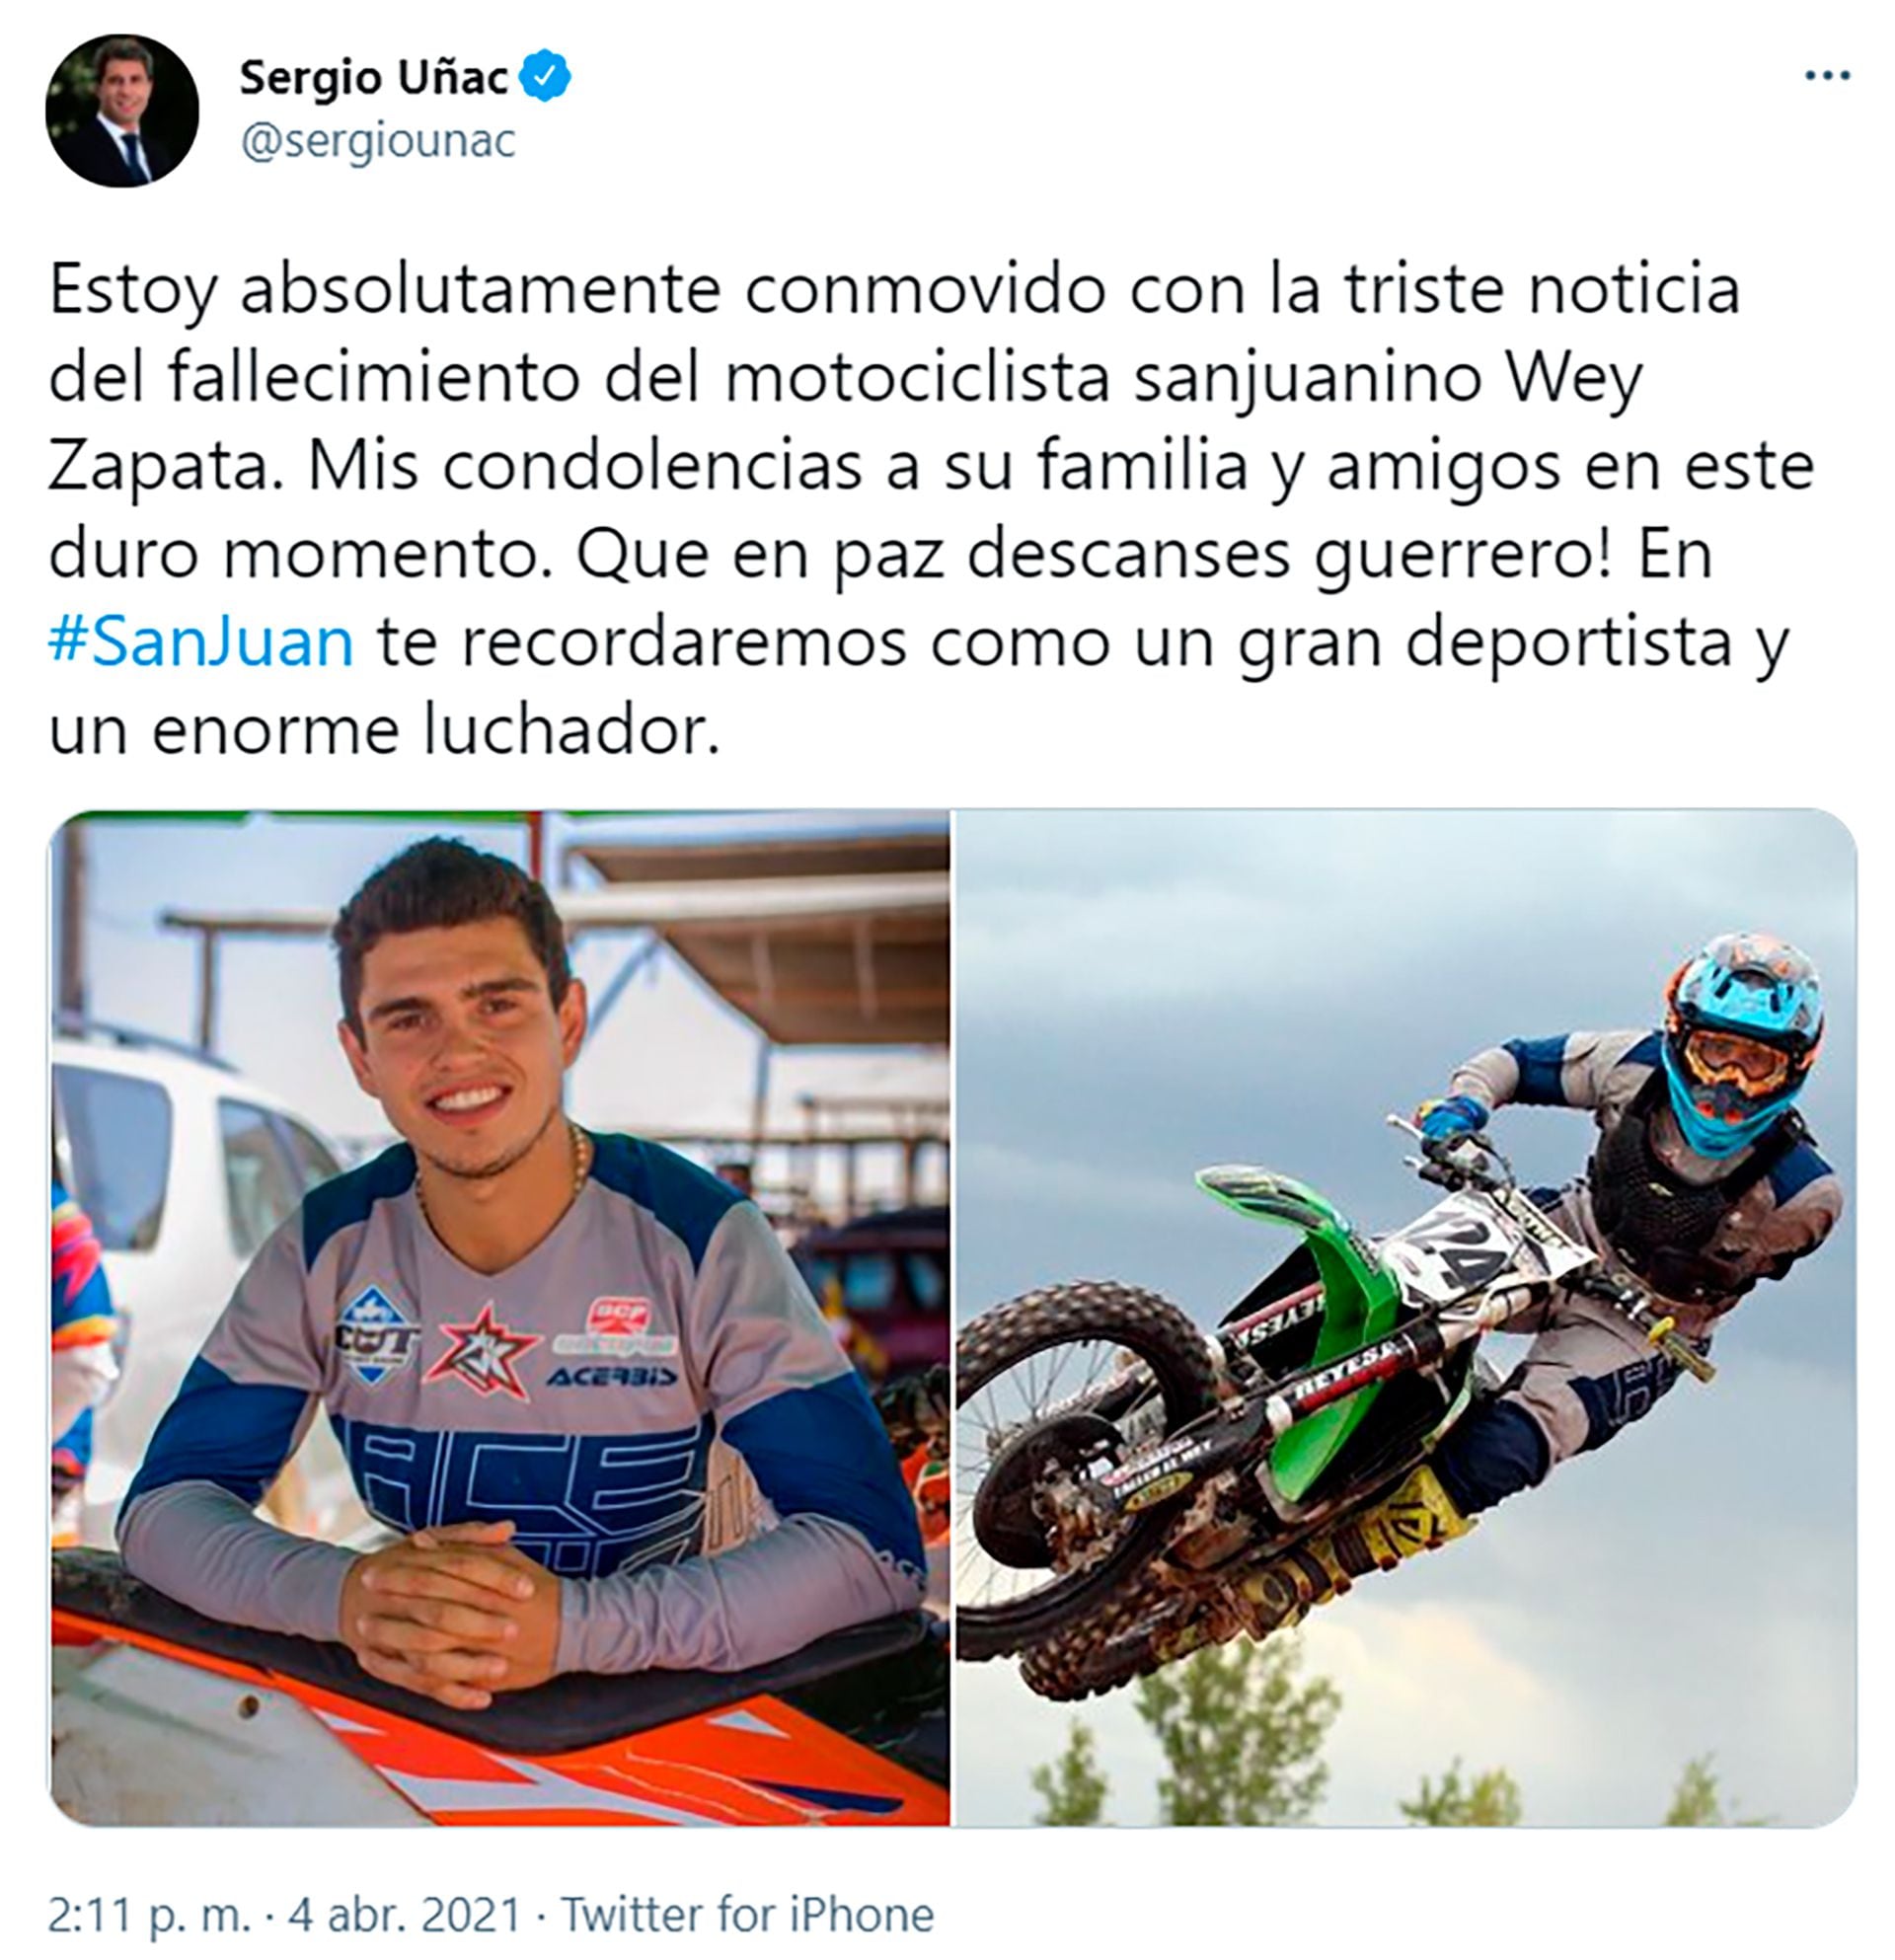 Piloto com braço amputado morre em corrida de motocross na Argentina, motovelocidade